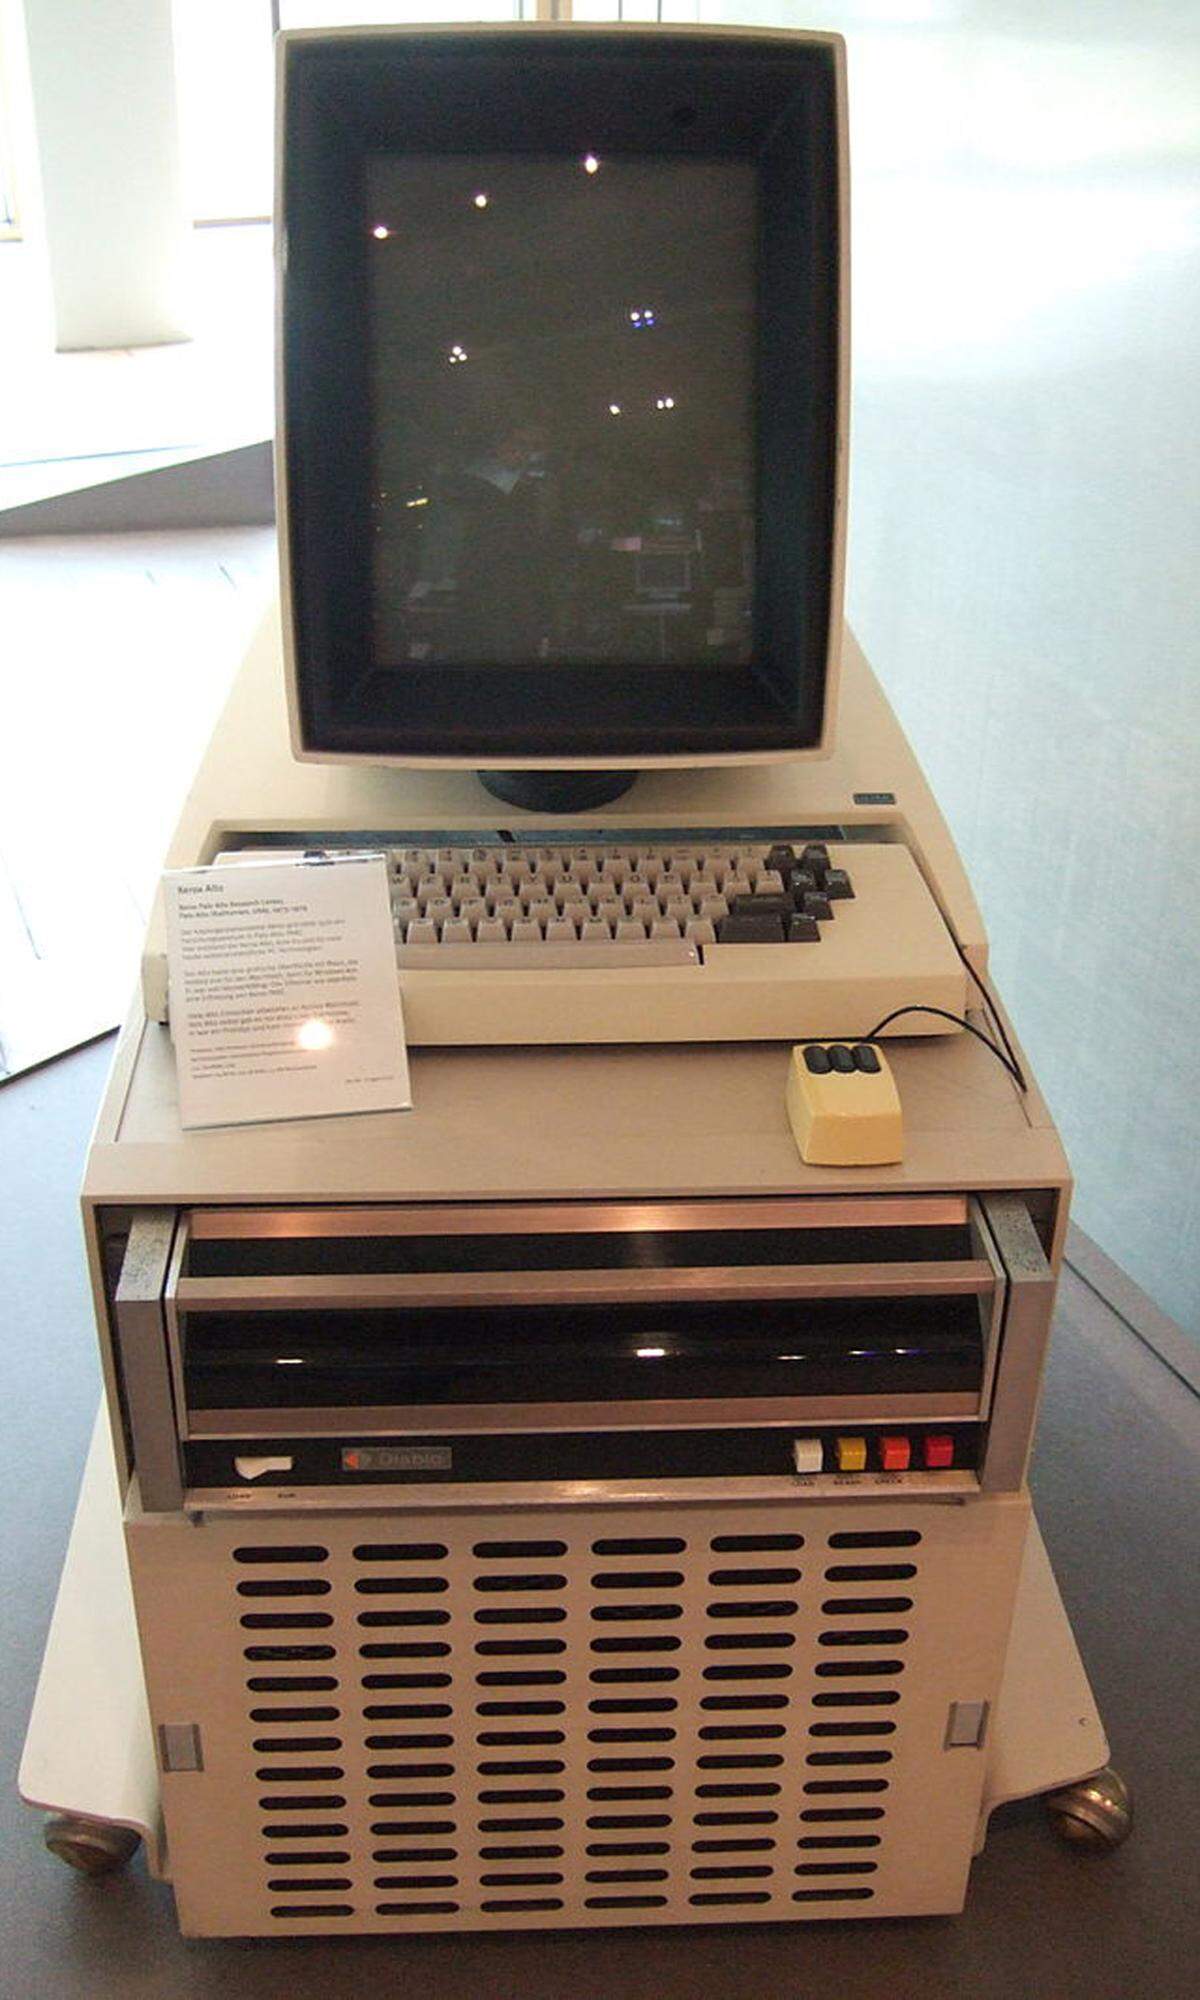 Der Xerox Alto war der erste PC mit einer grafischen Oberfläche und eines jener Geräte, die auch in einem Haushalt Platz finden konnte. Nur leisten musste man sich das Gerät auch können. Knapp 40.000 Dollar kostete der Xerox Alto, von dem 2000 Stück produziert wurden. Nach heutiger Kaufkraft läge der Preis bei 120.000 Euro. Viele der Entwicklungen, die im Alto steckten, hat auch Steve Jobs später für den Macintosh übernommen.